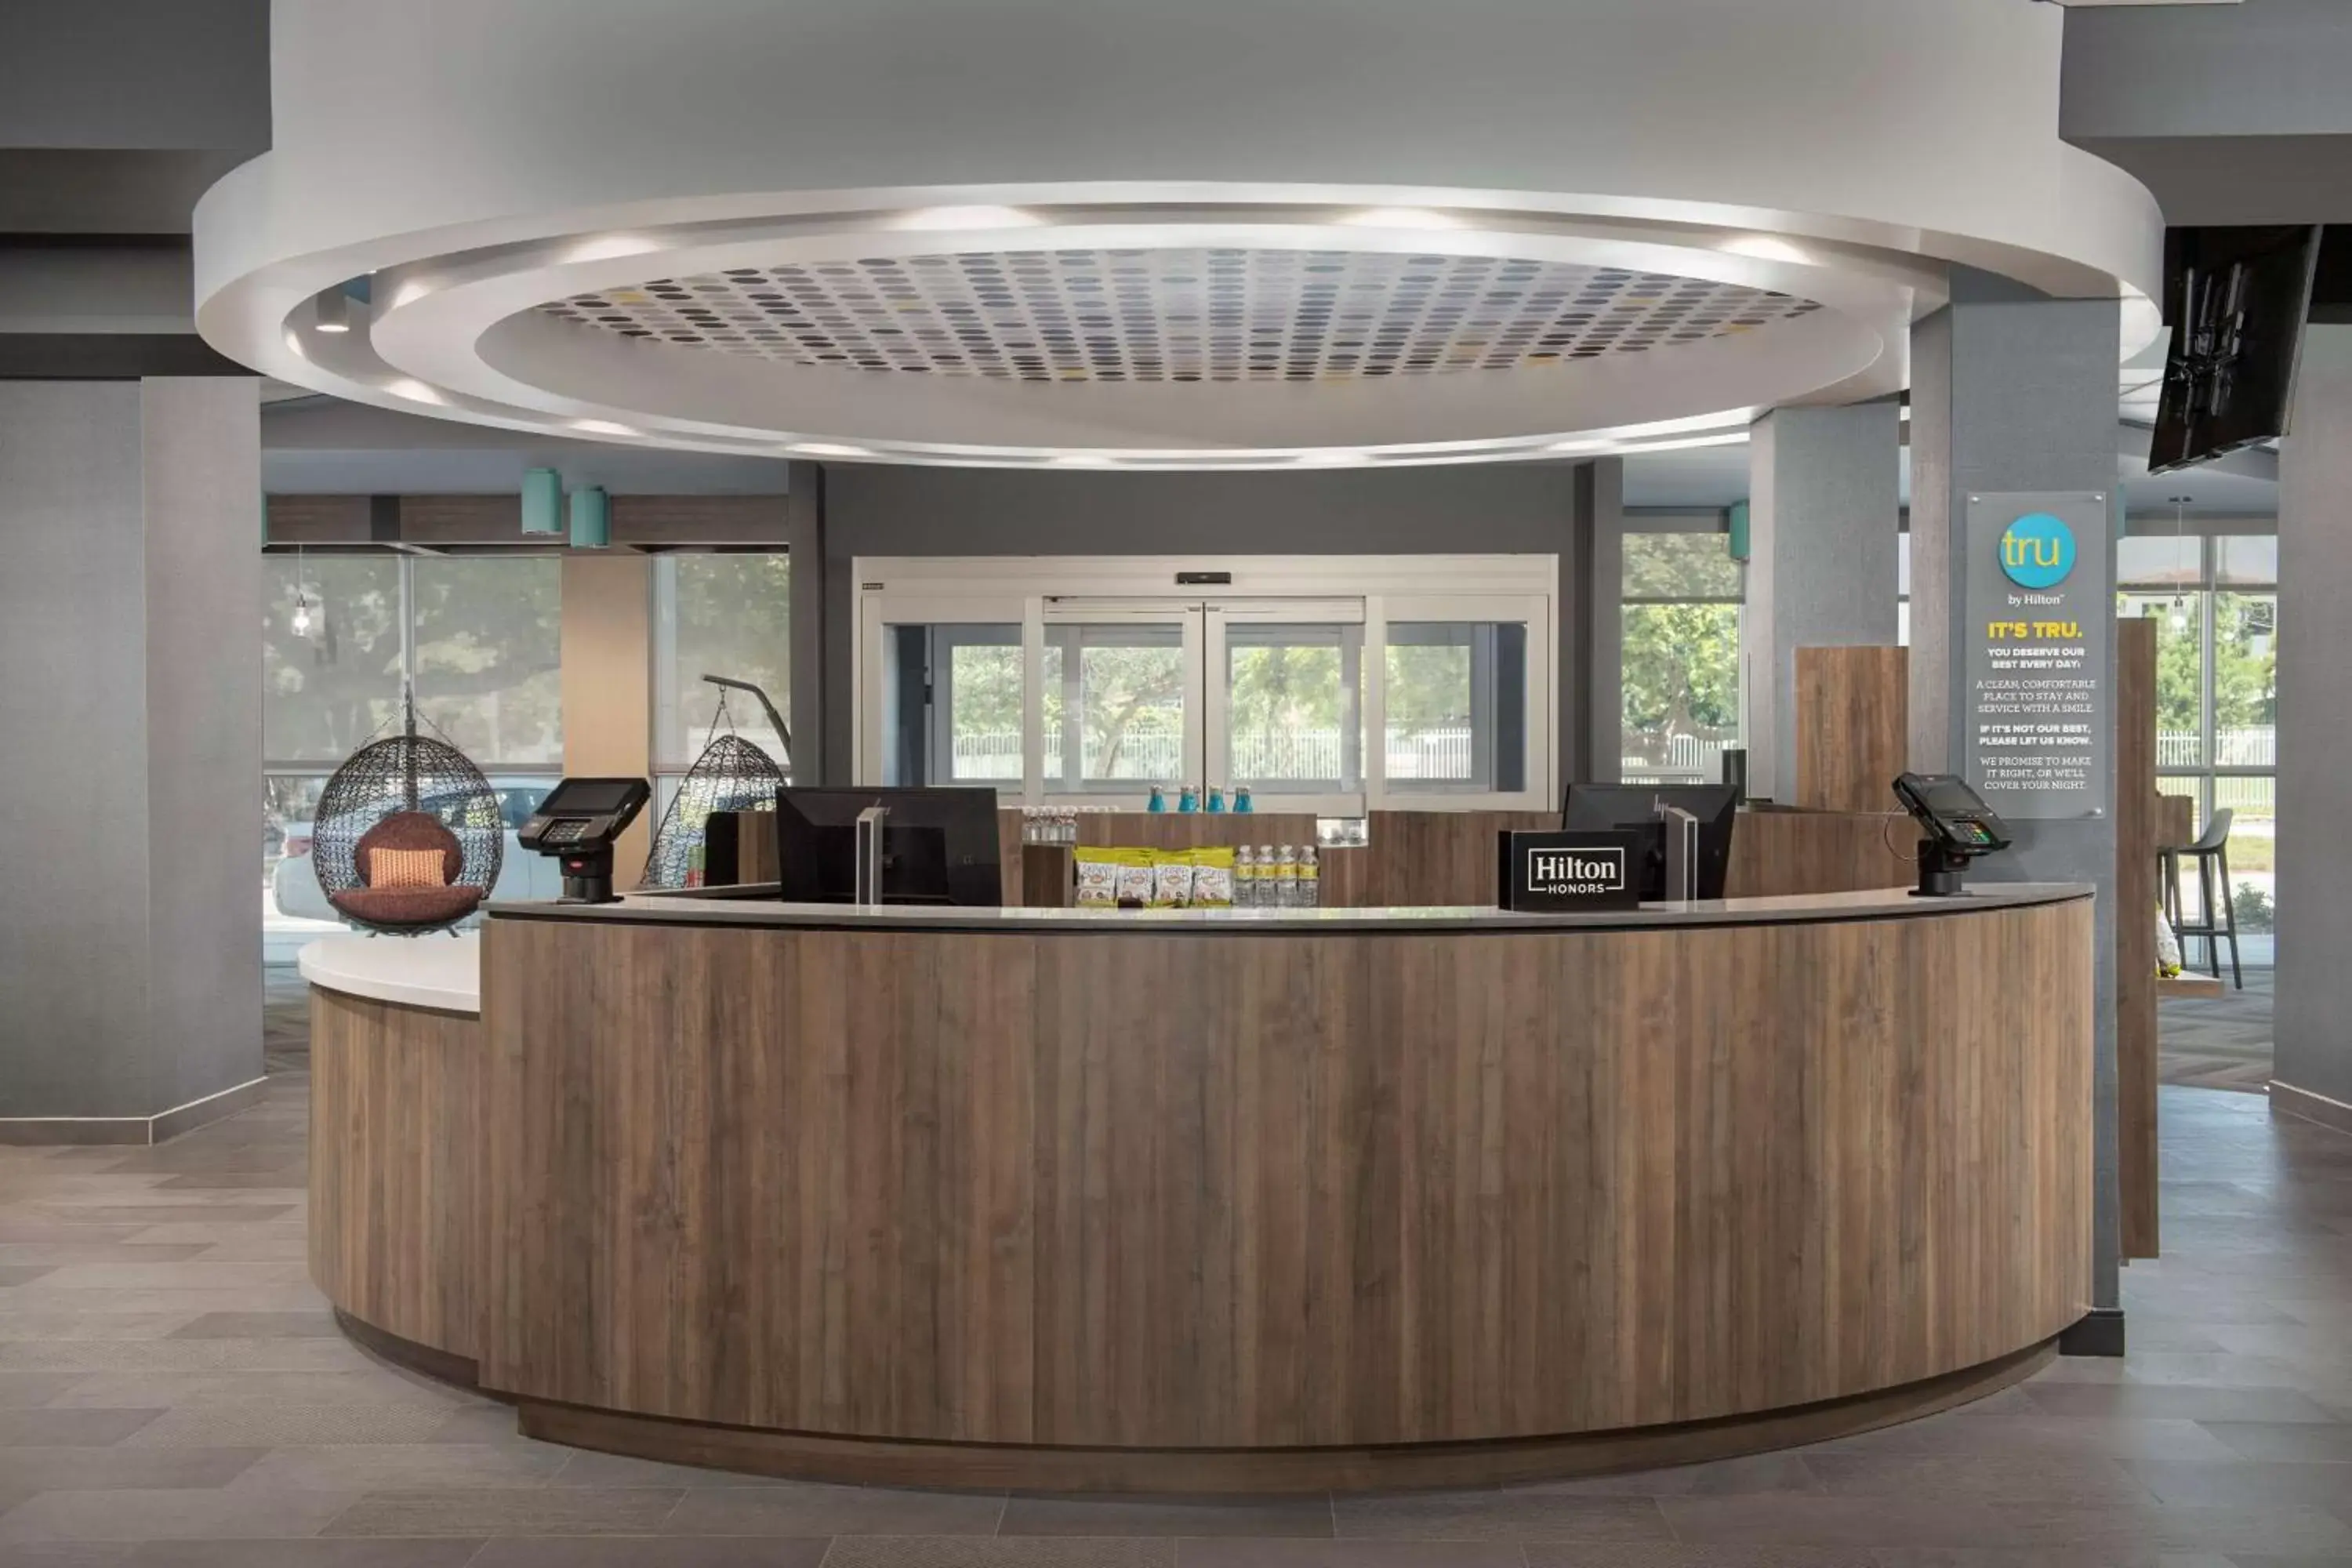 Lobby or reception, Lobby/Reception in Tru By Hilton Miami West Brickell